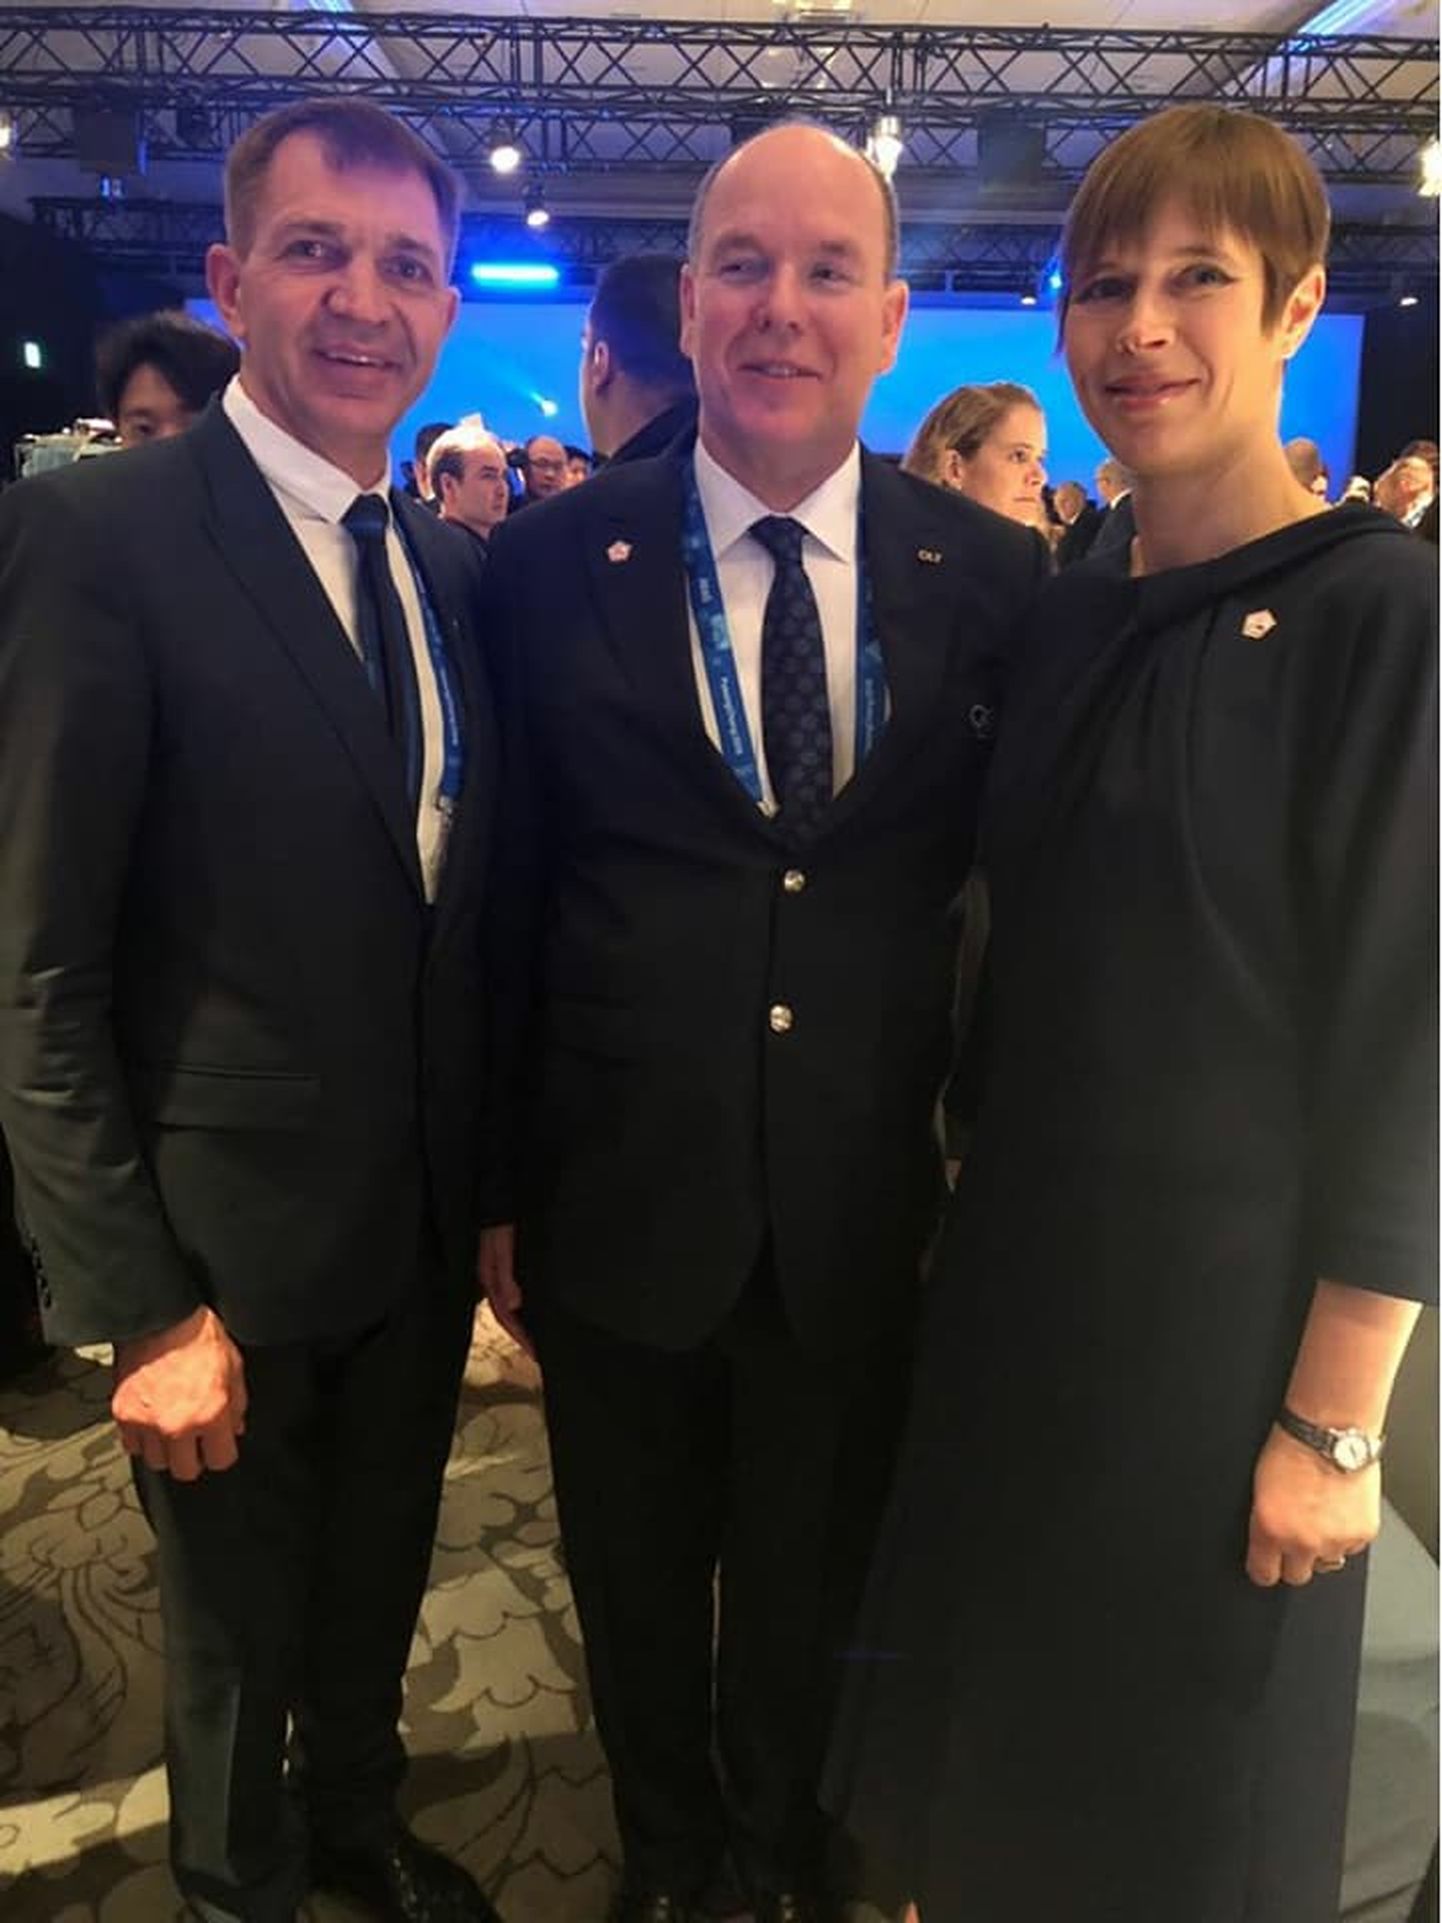 EOK president Urmas Sõõrumaa, Monaco prints Albert ja Eesti Vabariigi president Kersti Kaljulaid.